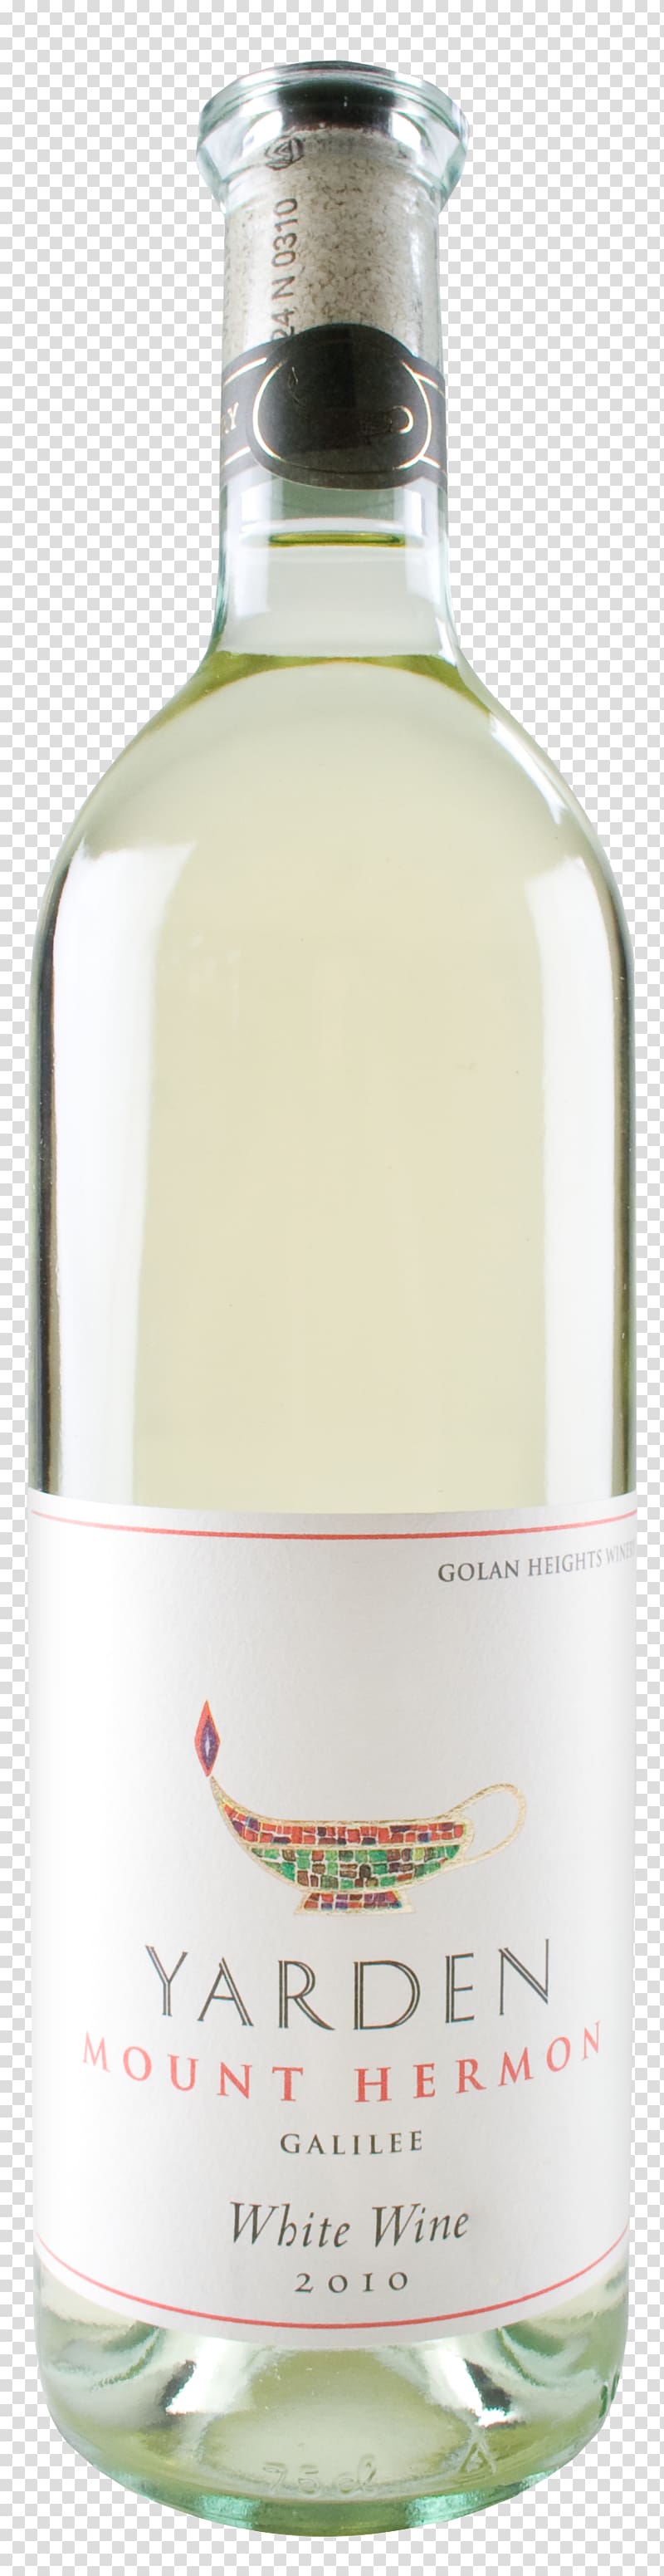 White wine Liqueur Sauvignon blanc Petite Sirah, wine transparent background PNG clipart